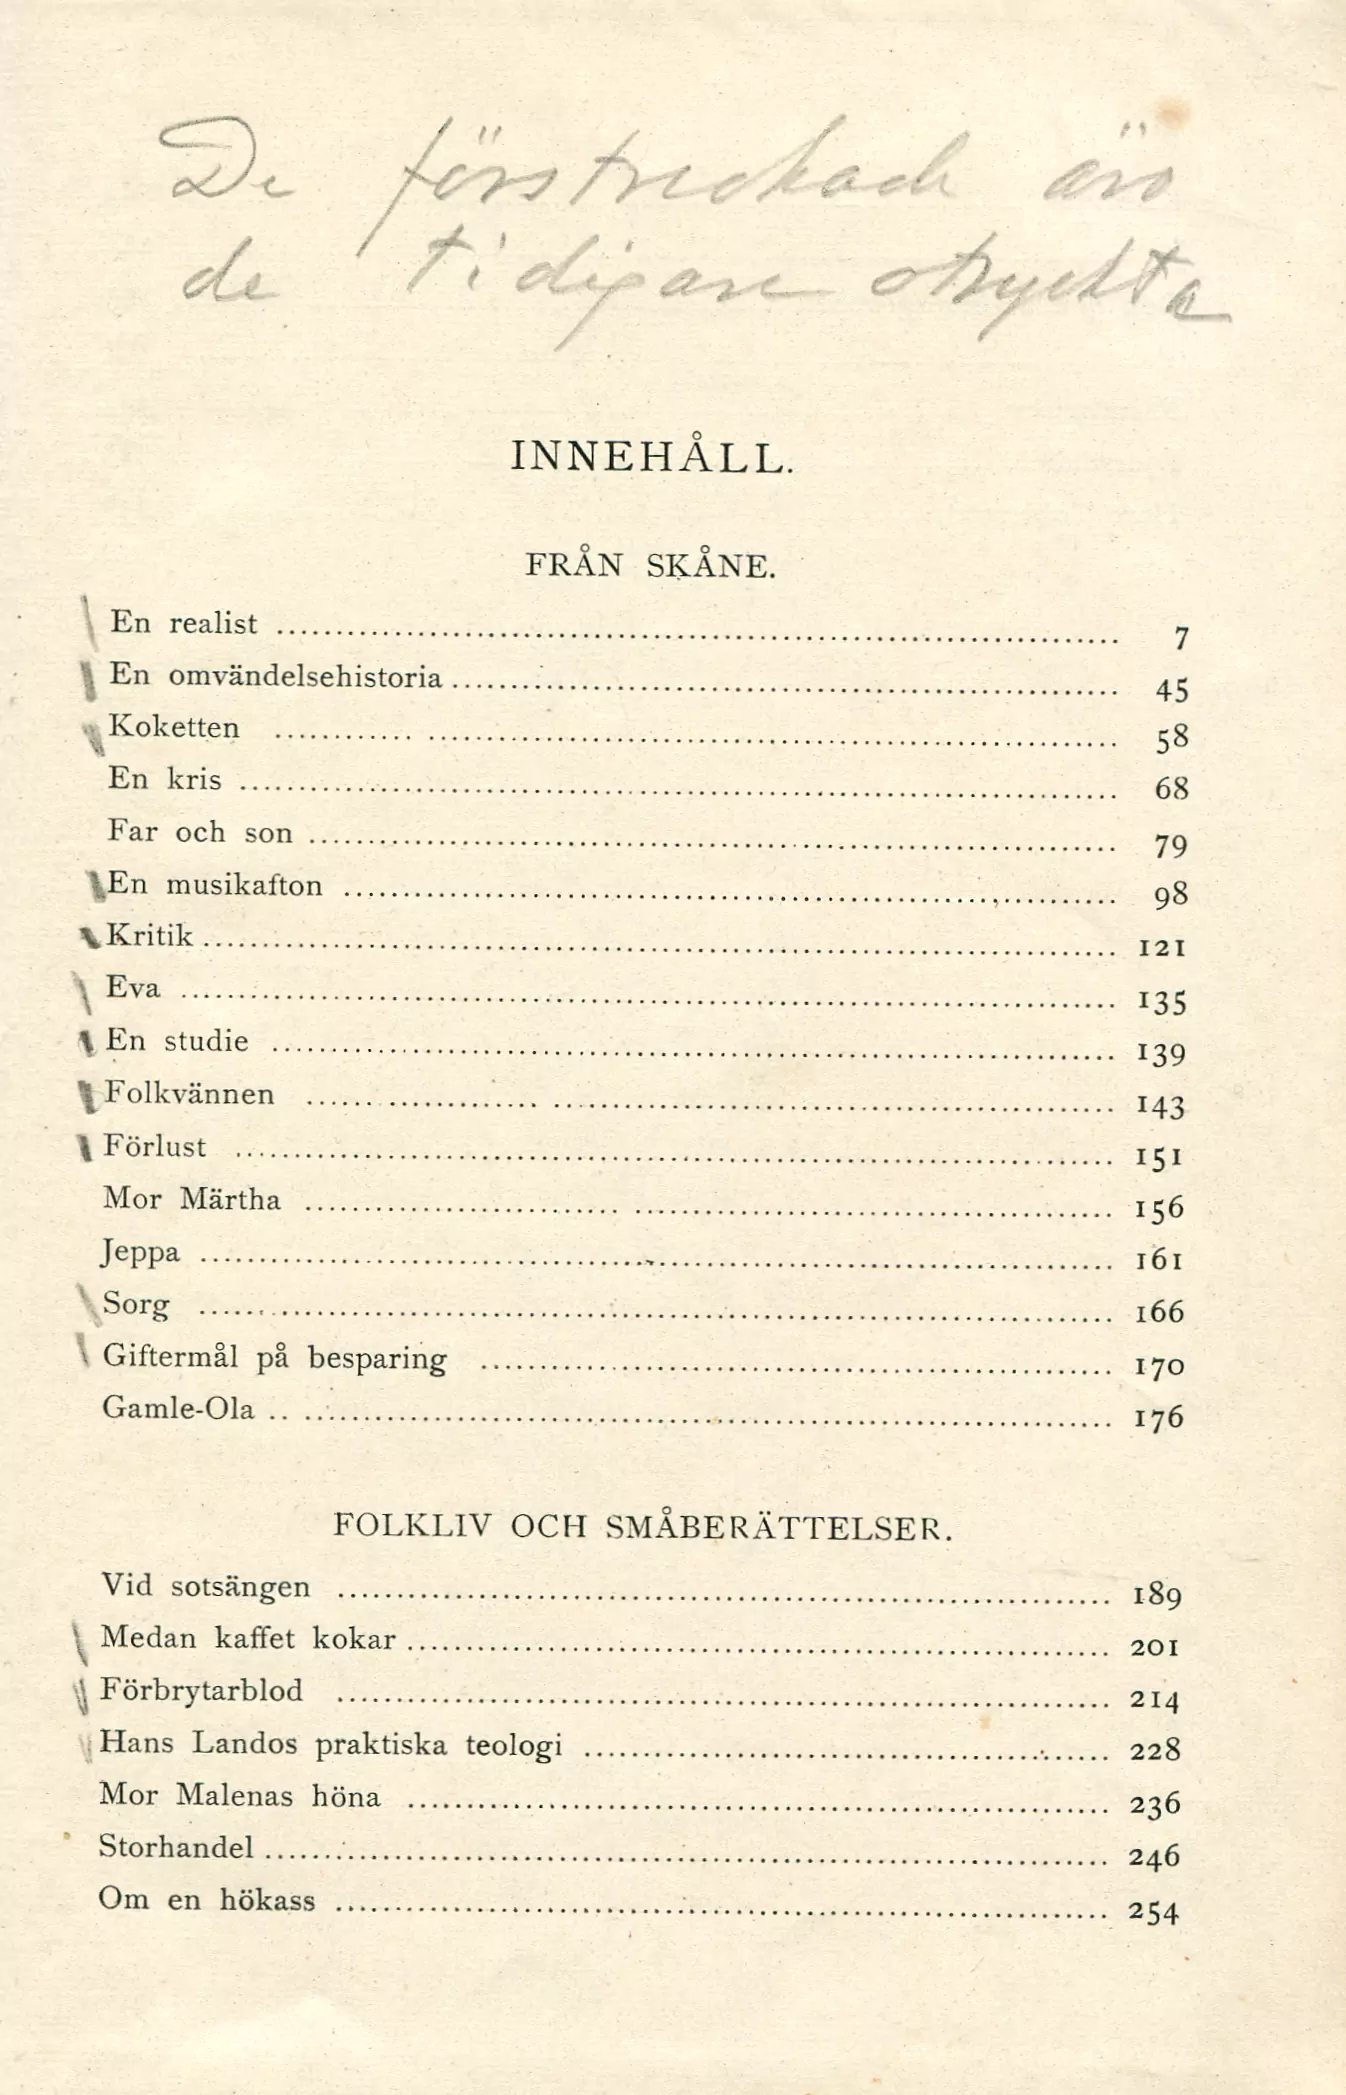 Samlade skrifter Bd 1 Från skåne  4. uppl., Stockholm 1918